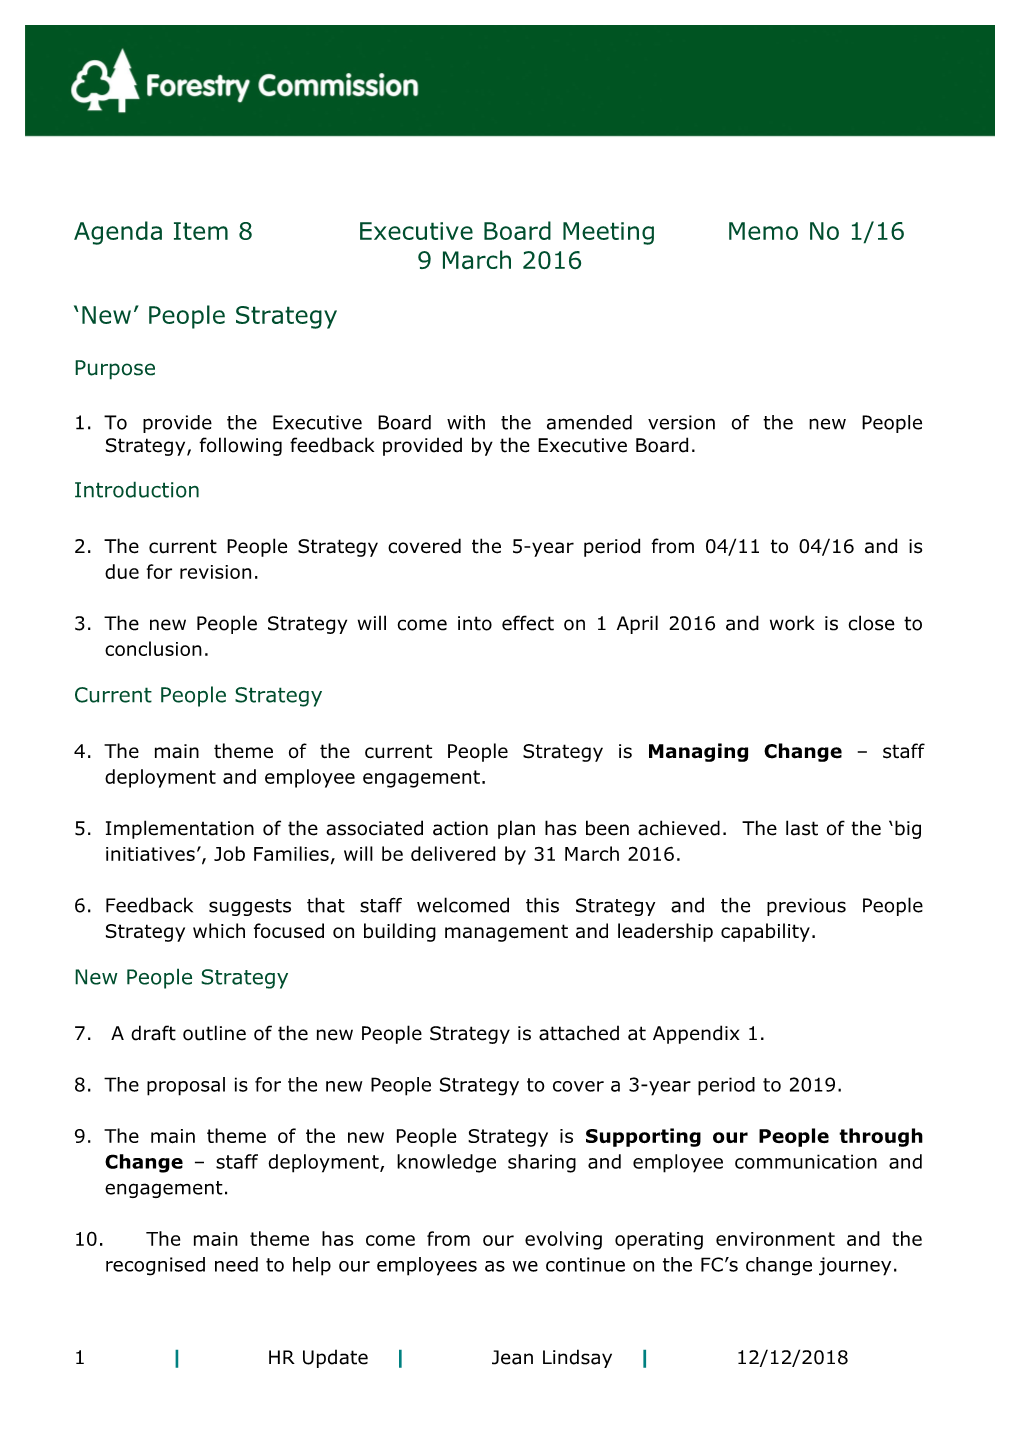 Agenda Item 8Executive Board Meetingmemo No 1/16 9 March 2016